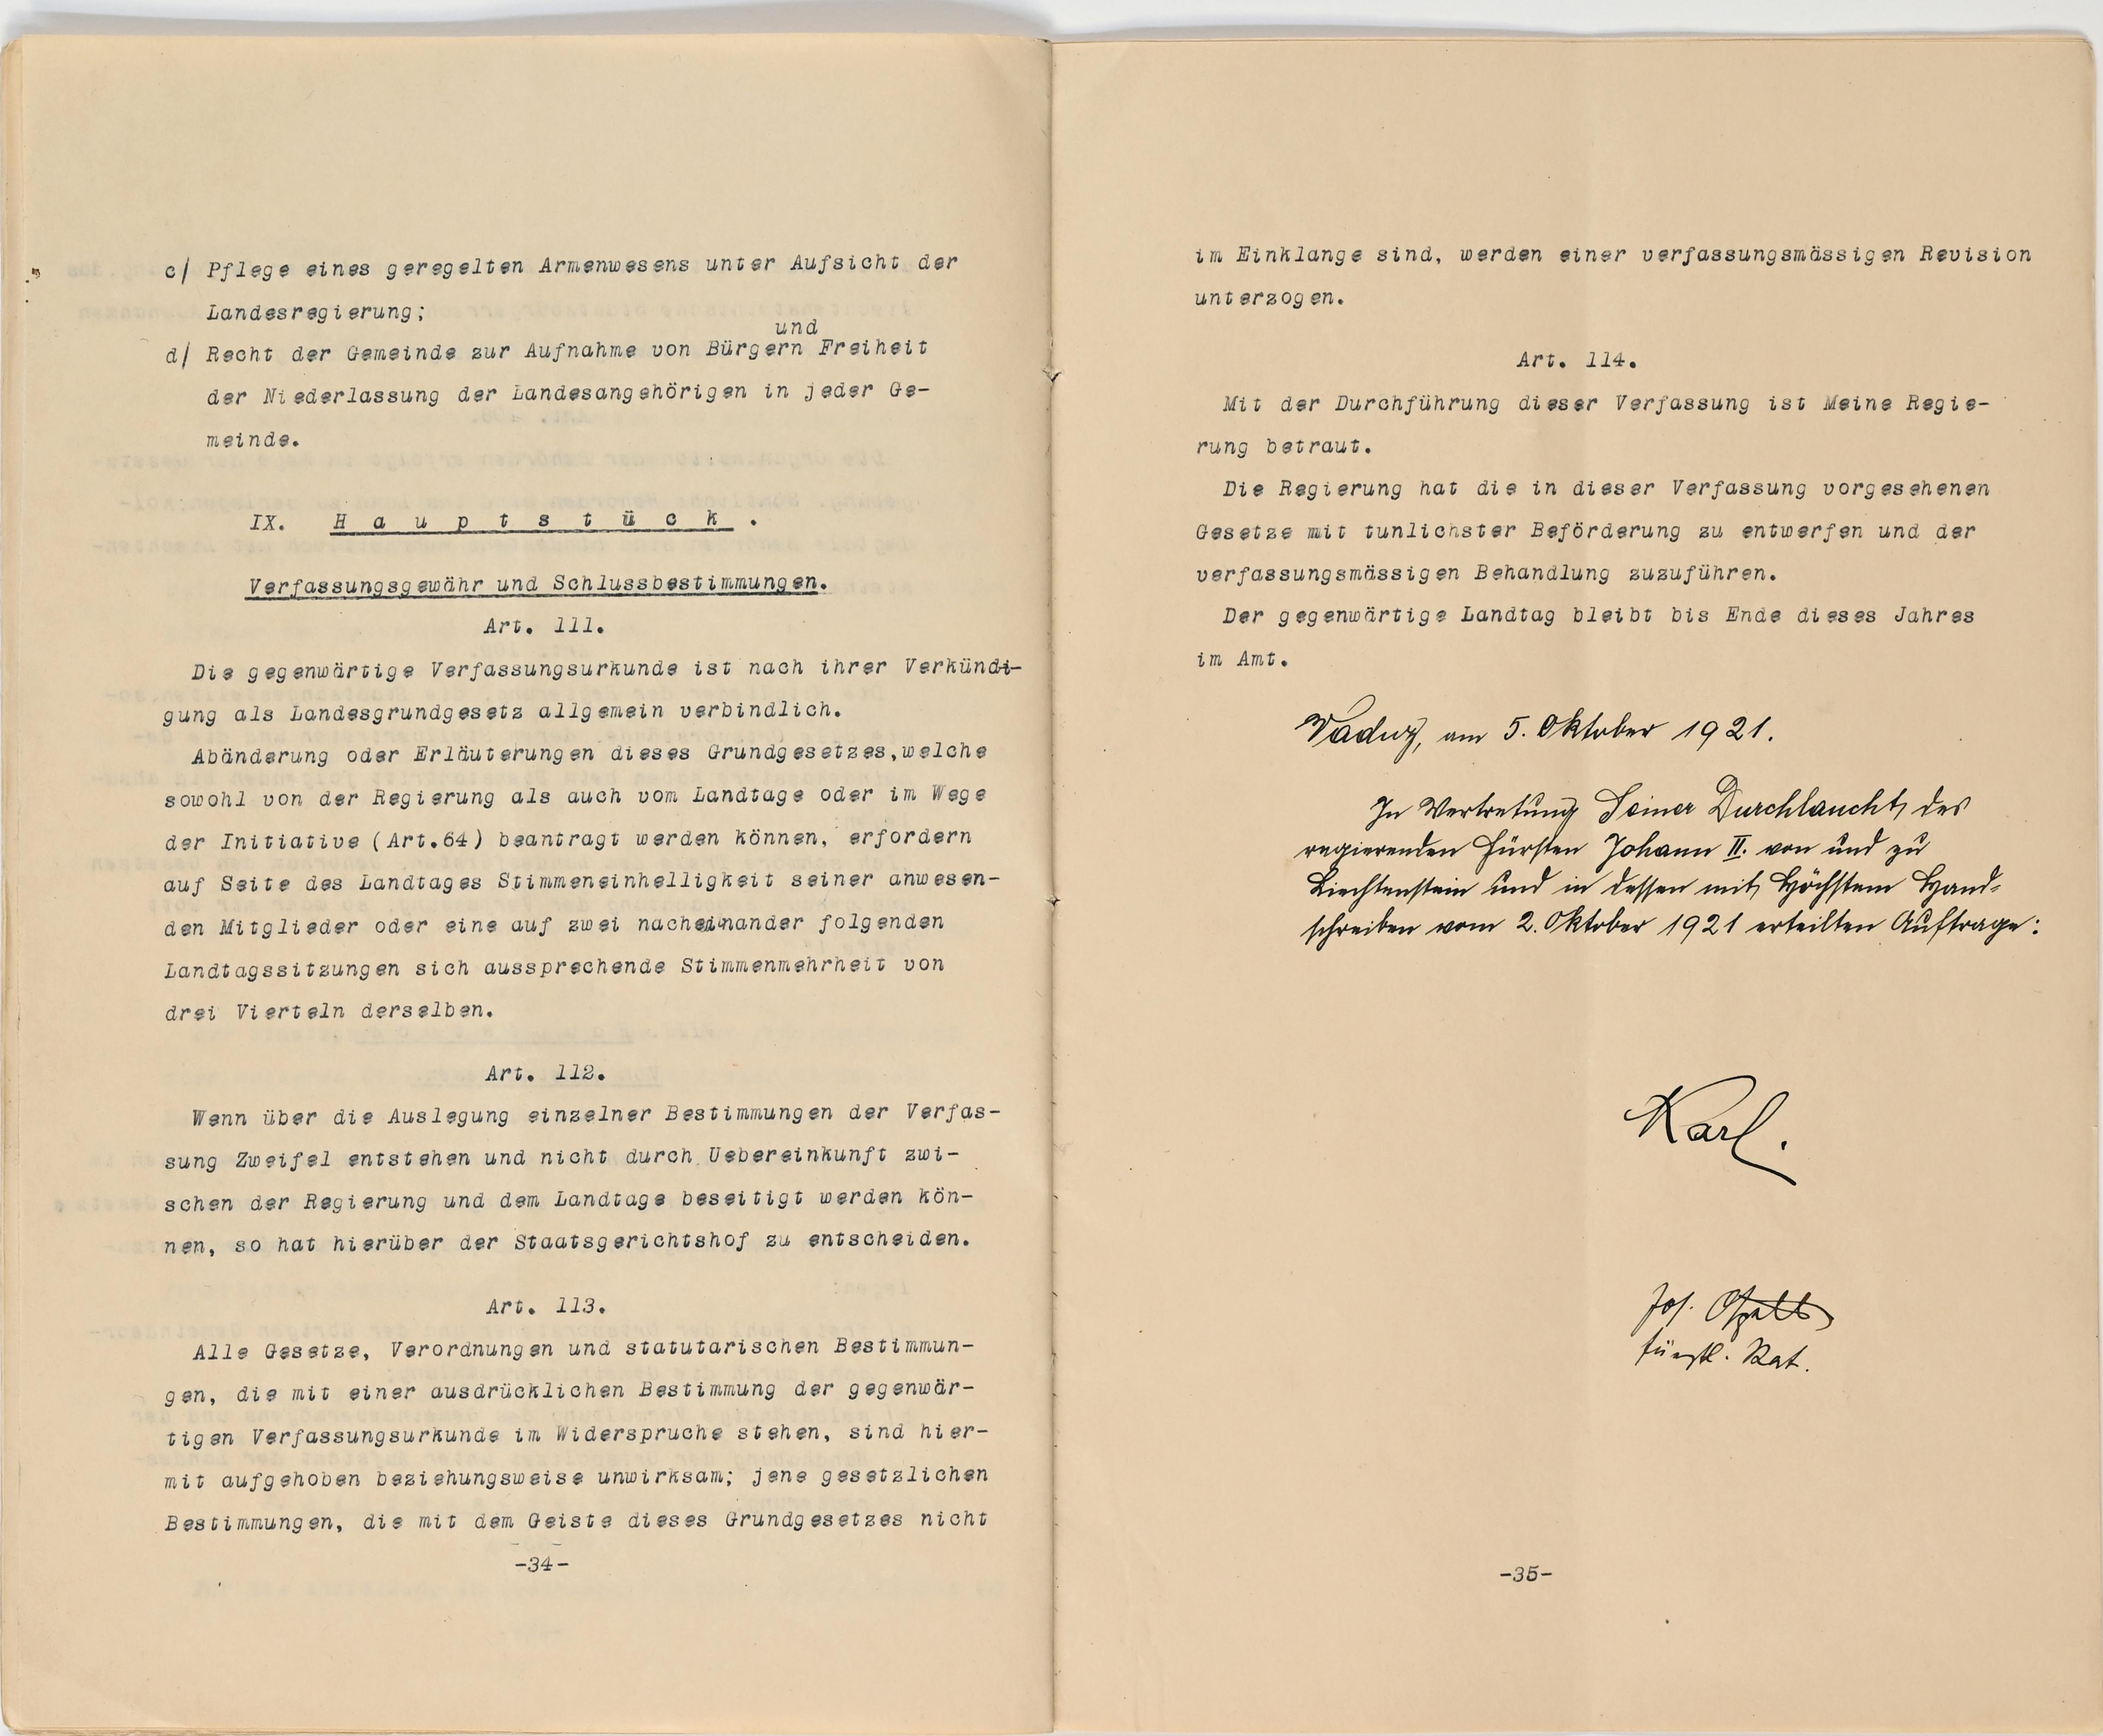 Verfassung 1921 Art. 111 bis Art. 114 mit Unterschriften